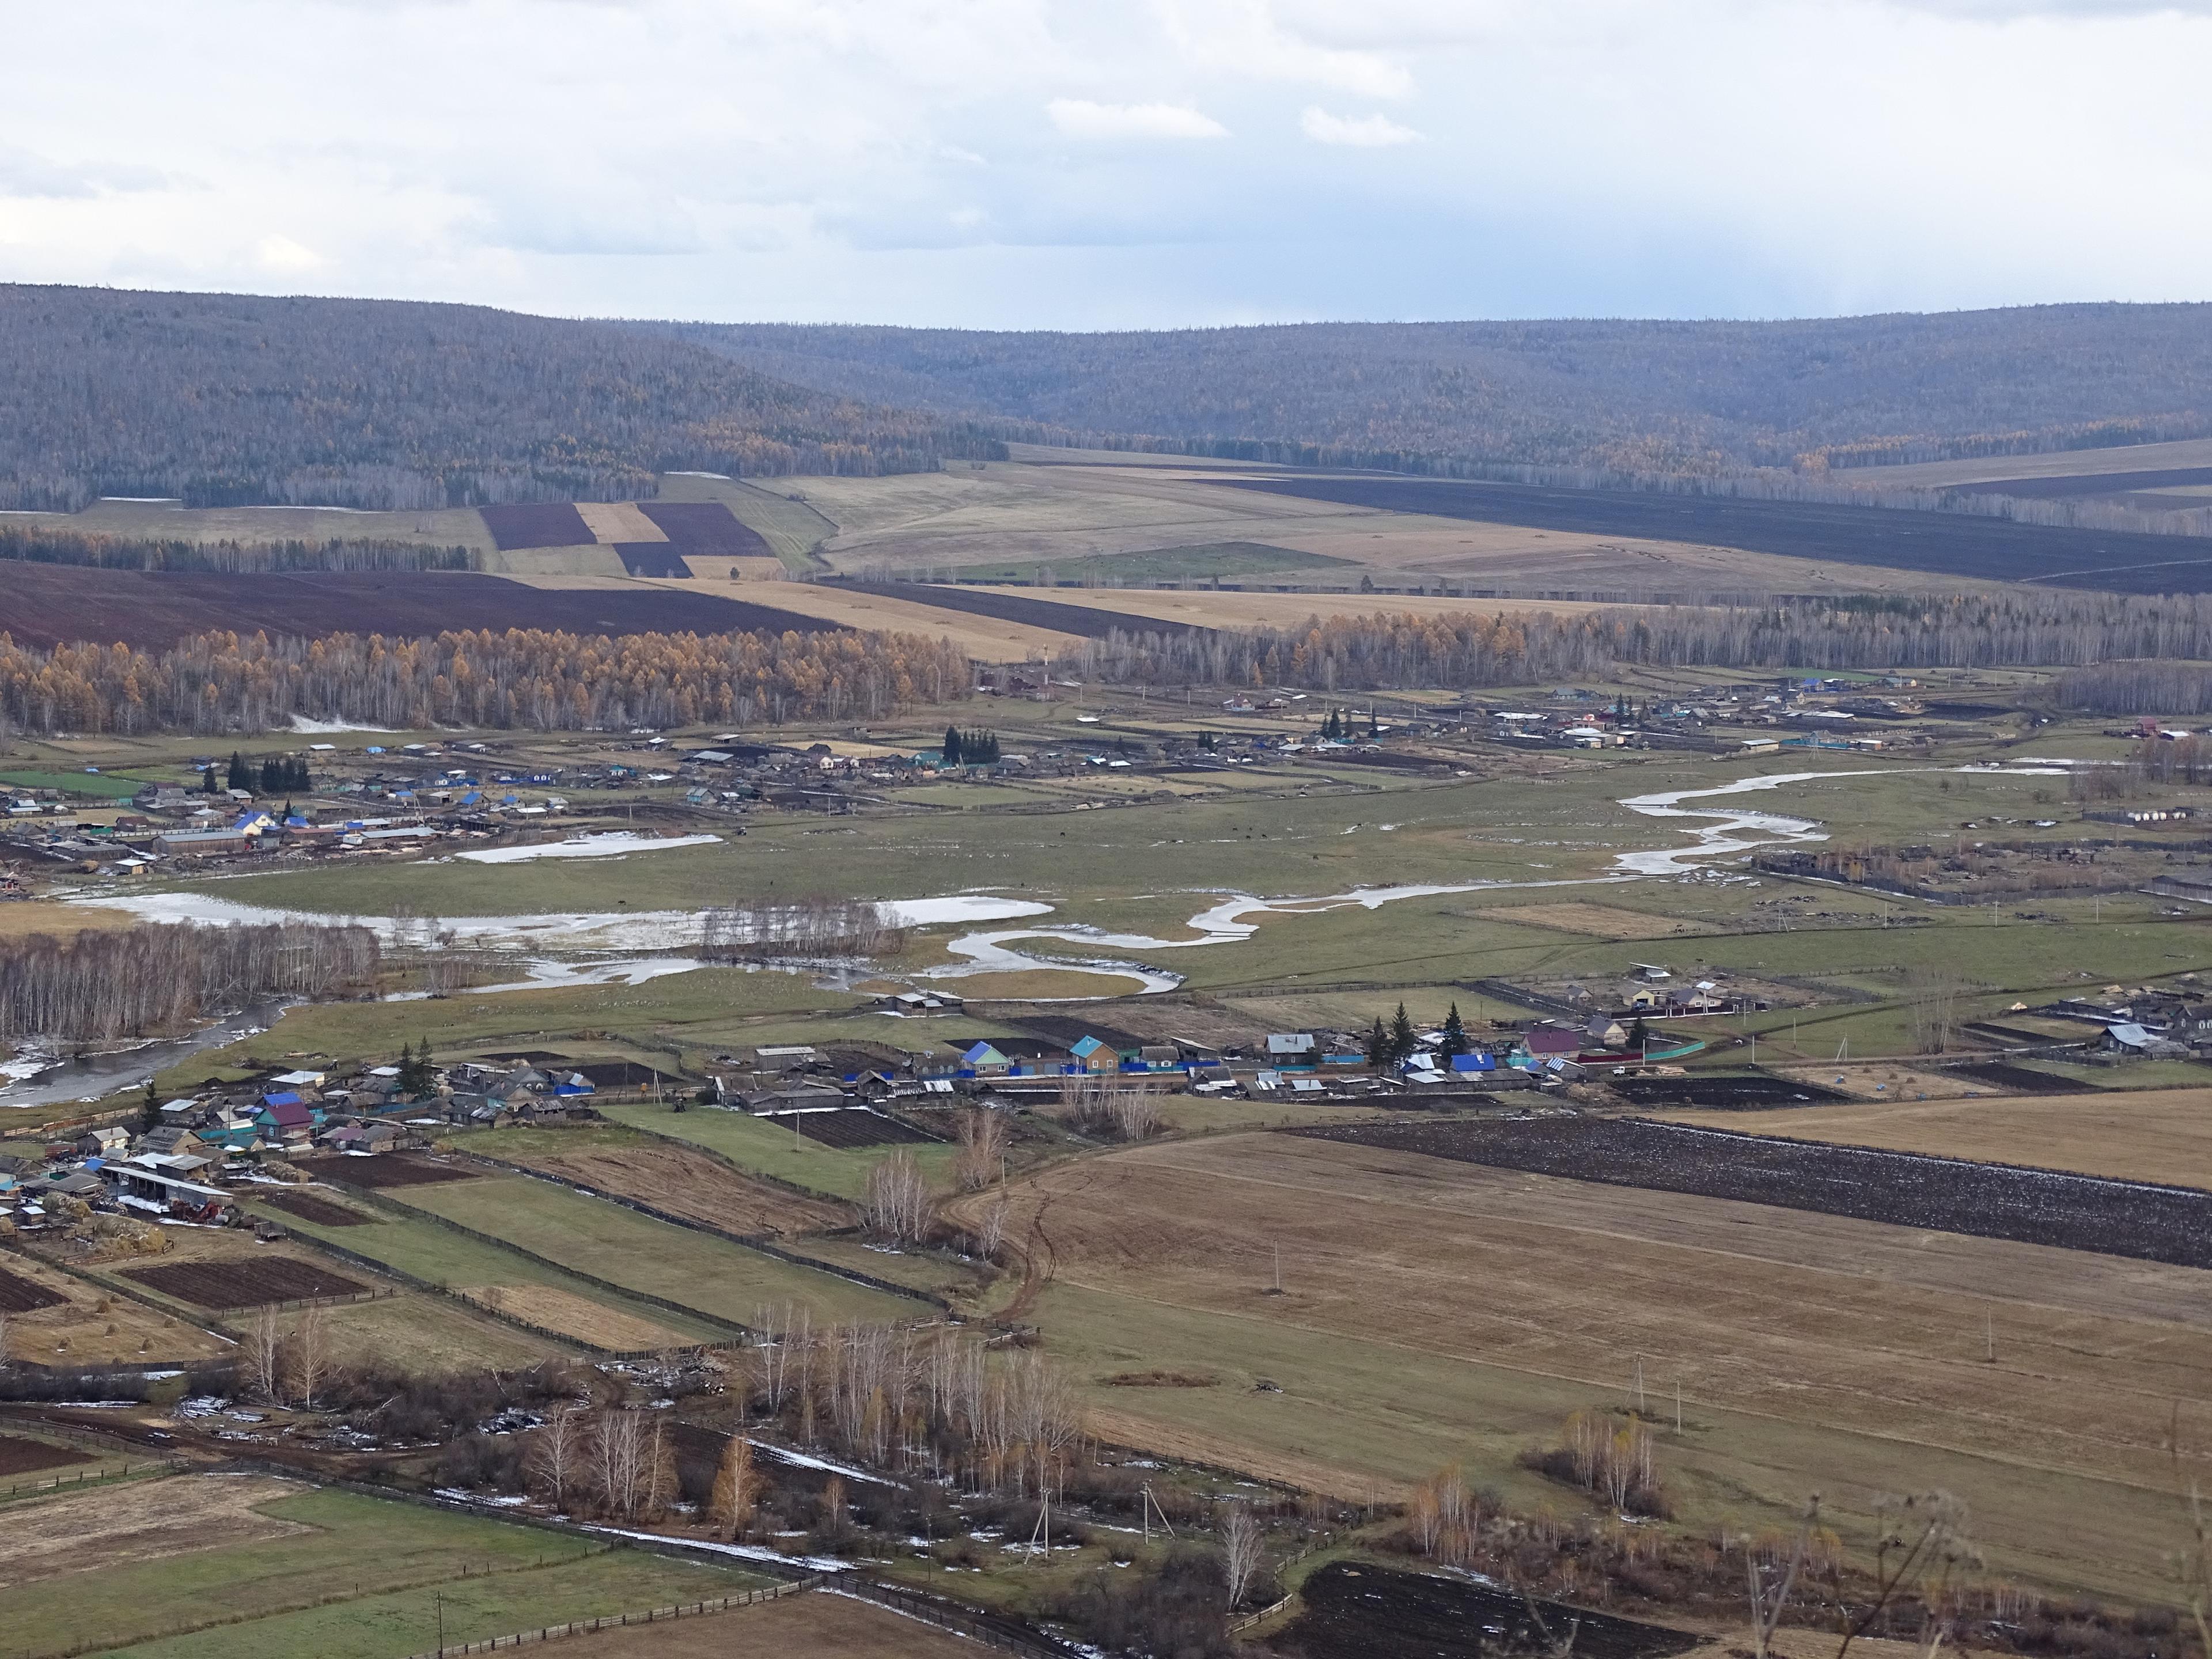 Wieś Wierszyna na Syberii